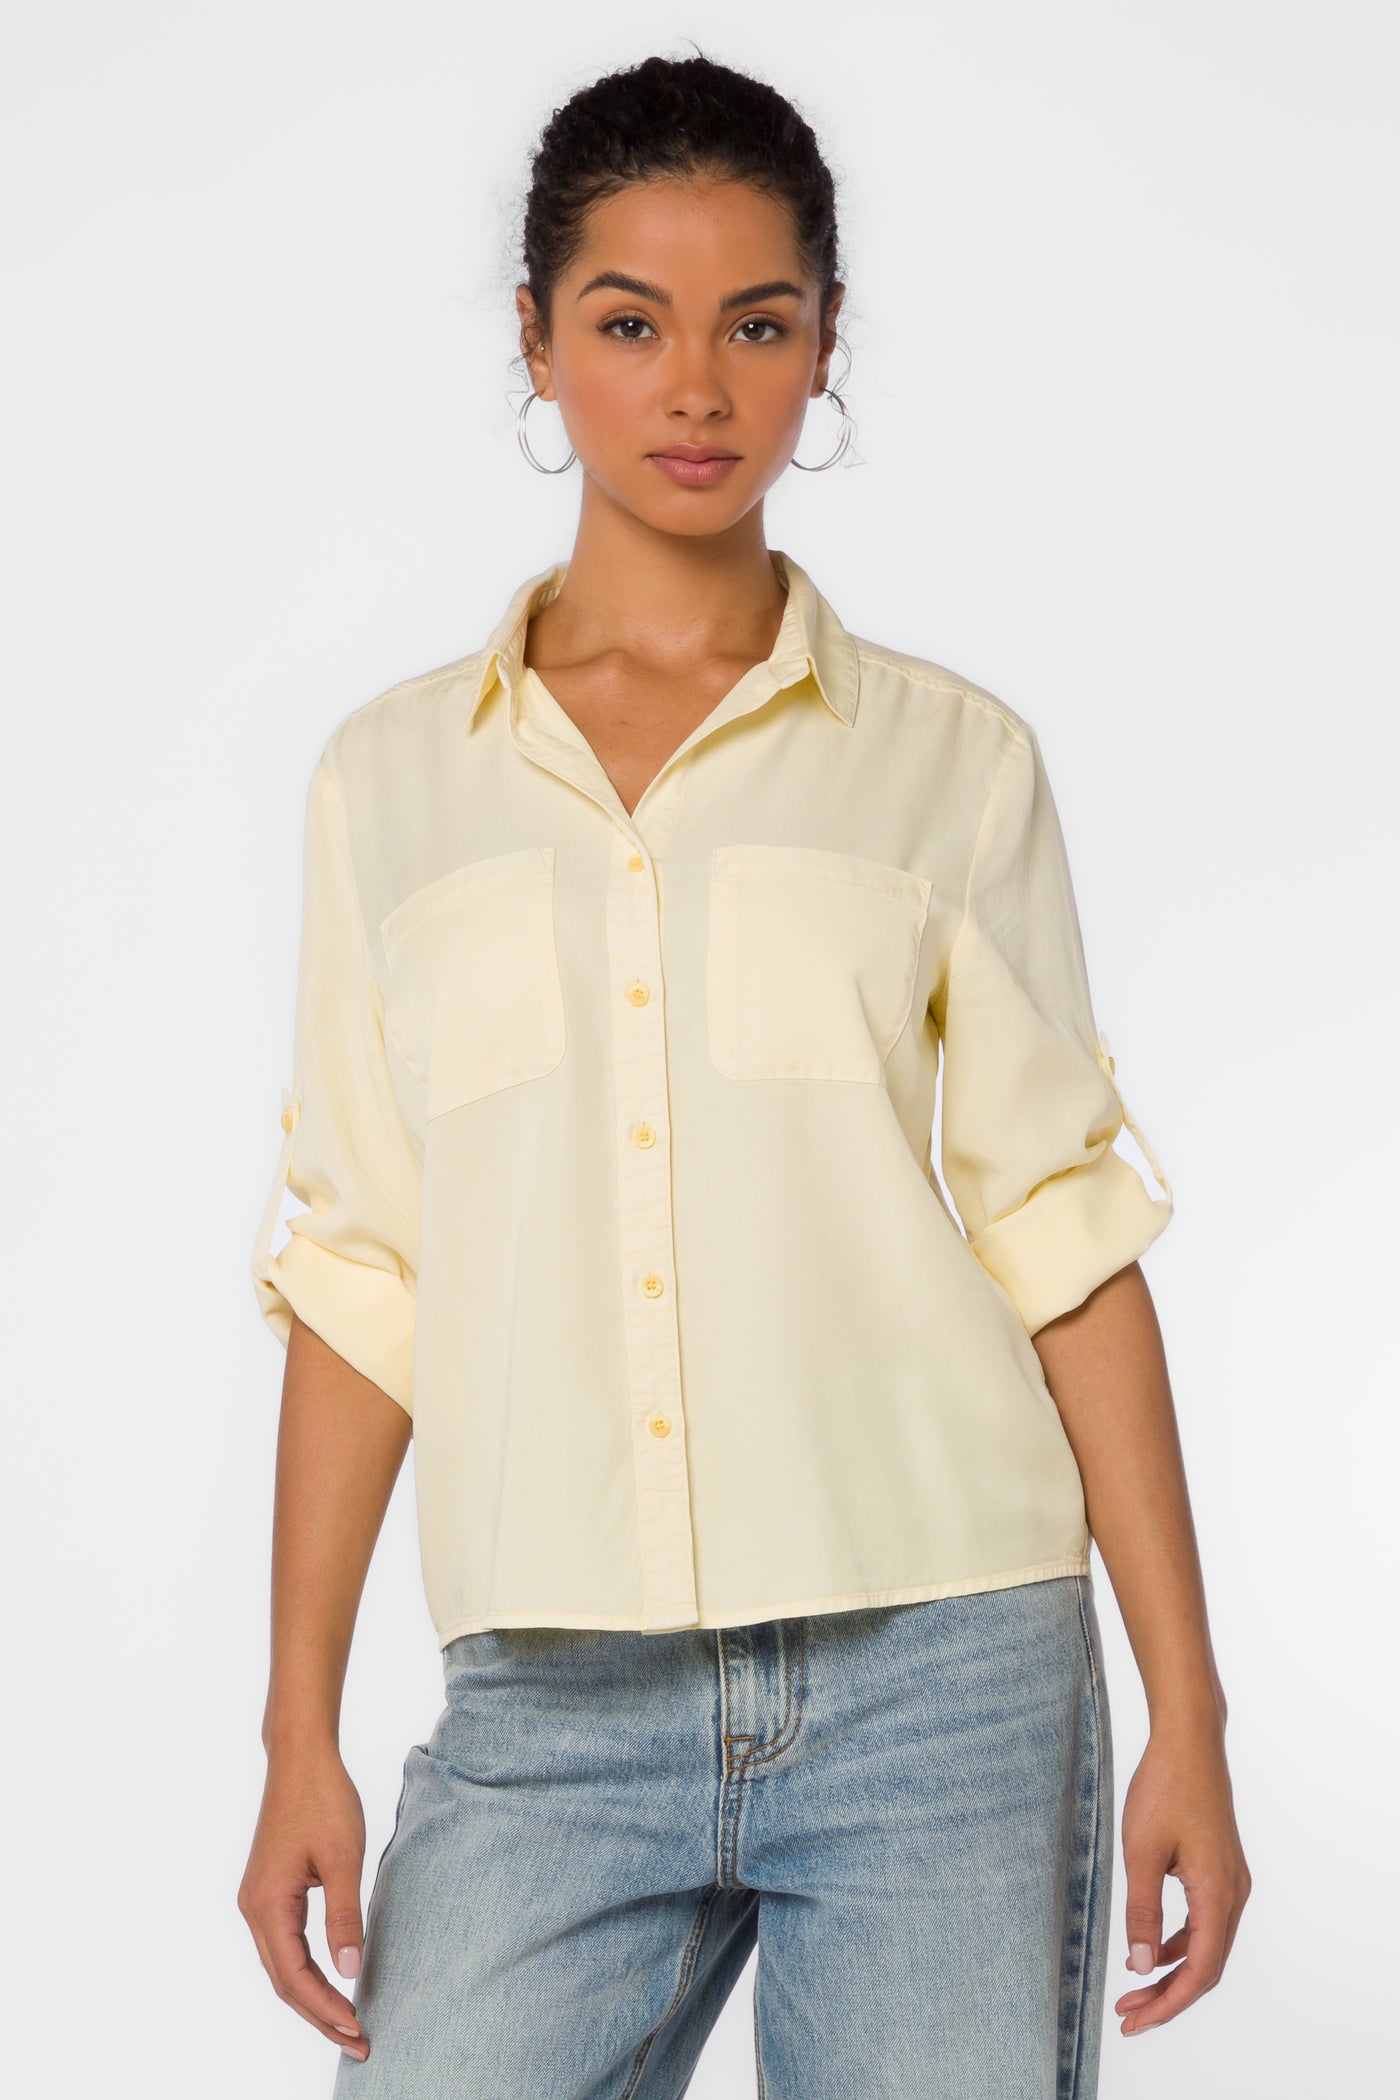 Lucia Pastel Yellow Shirt - Tops - Velvet Heart Clothing